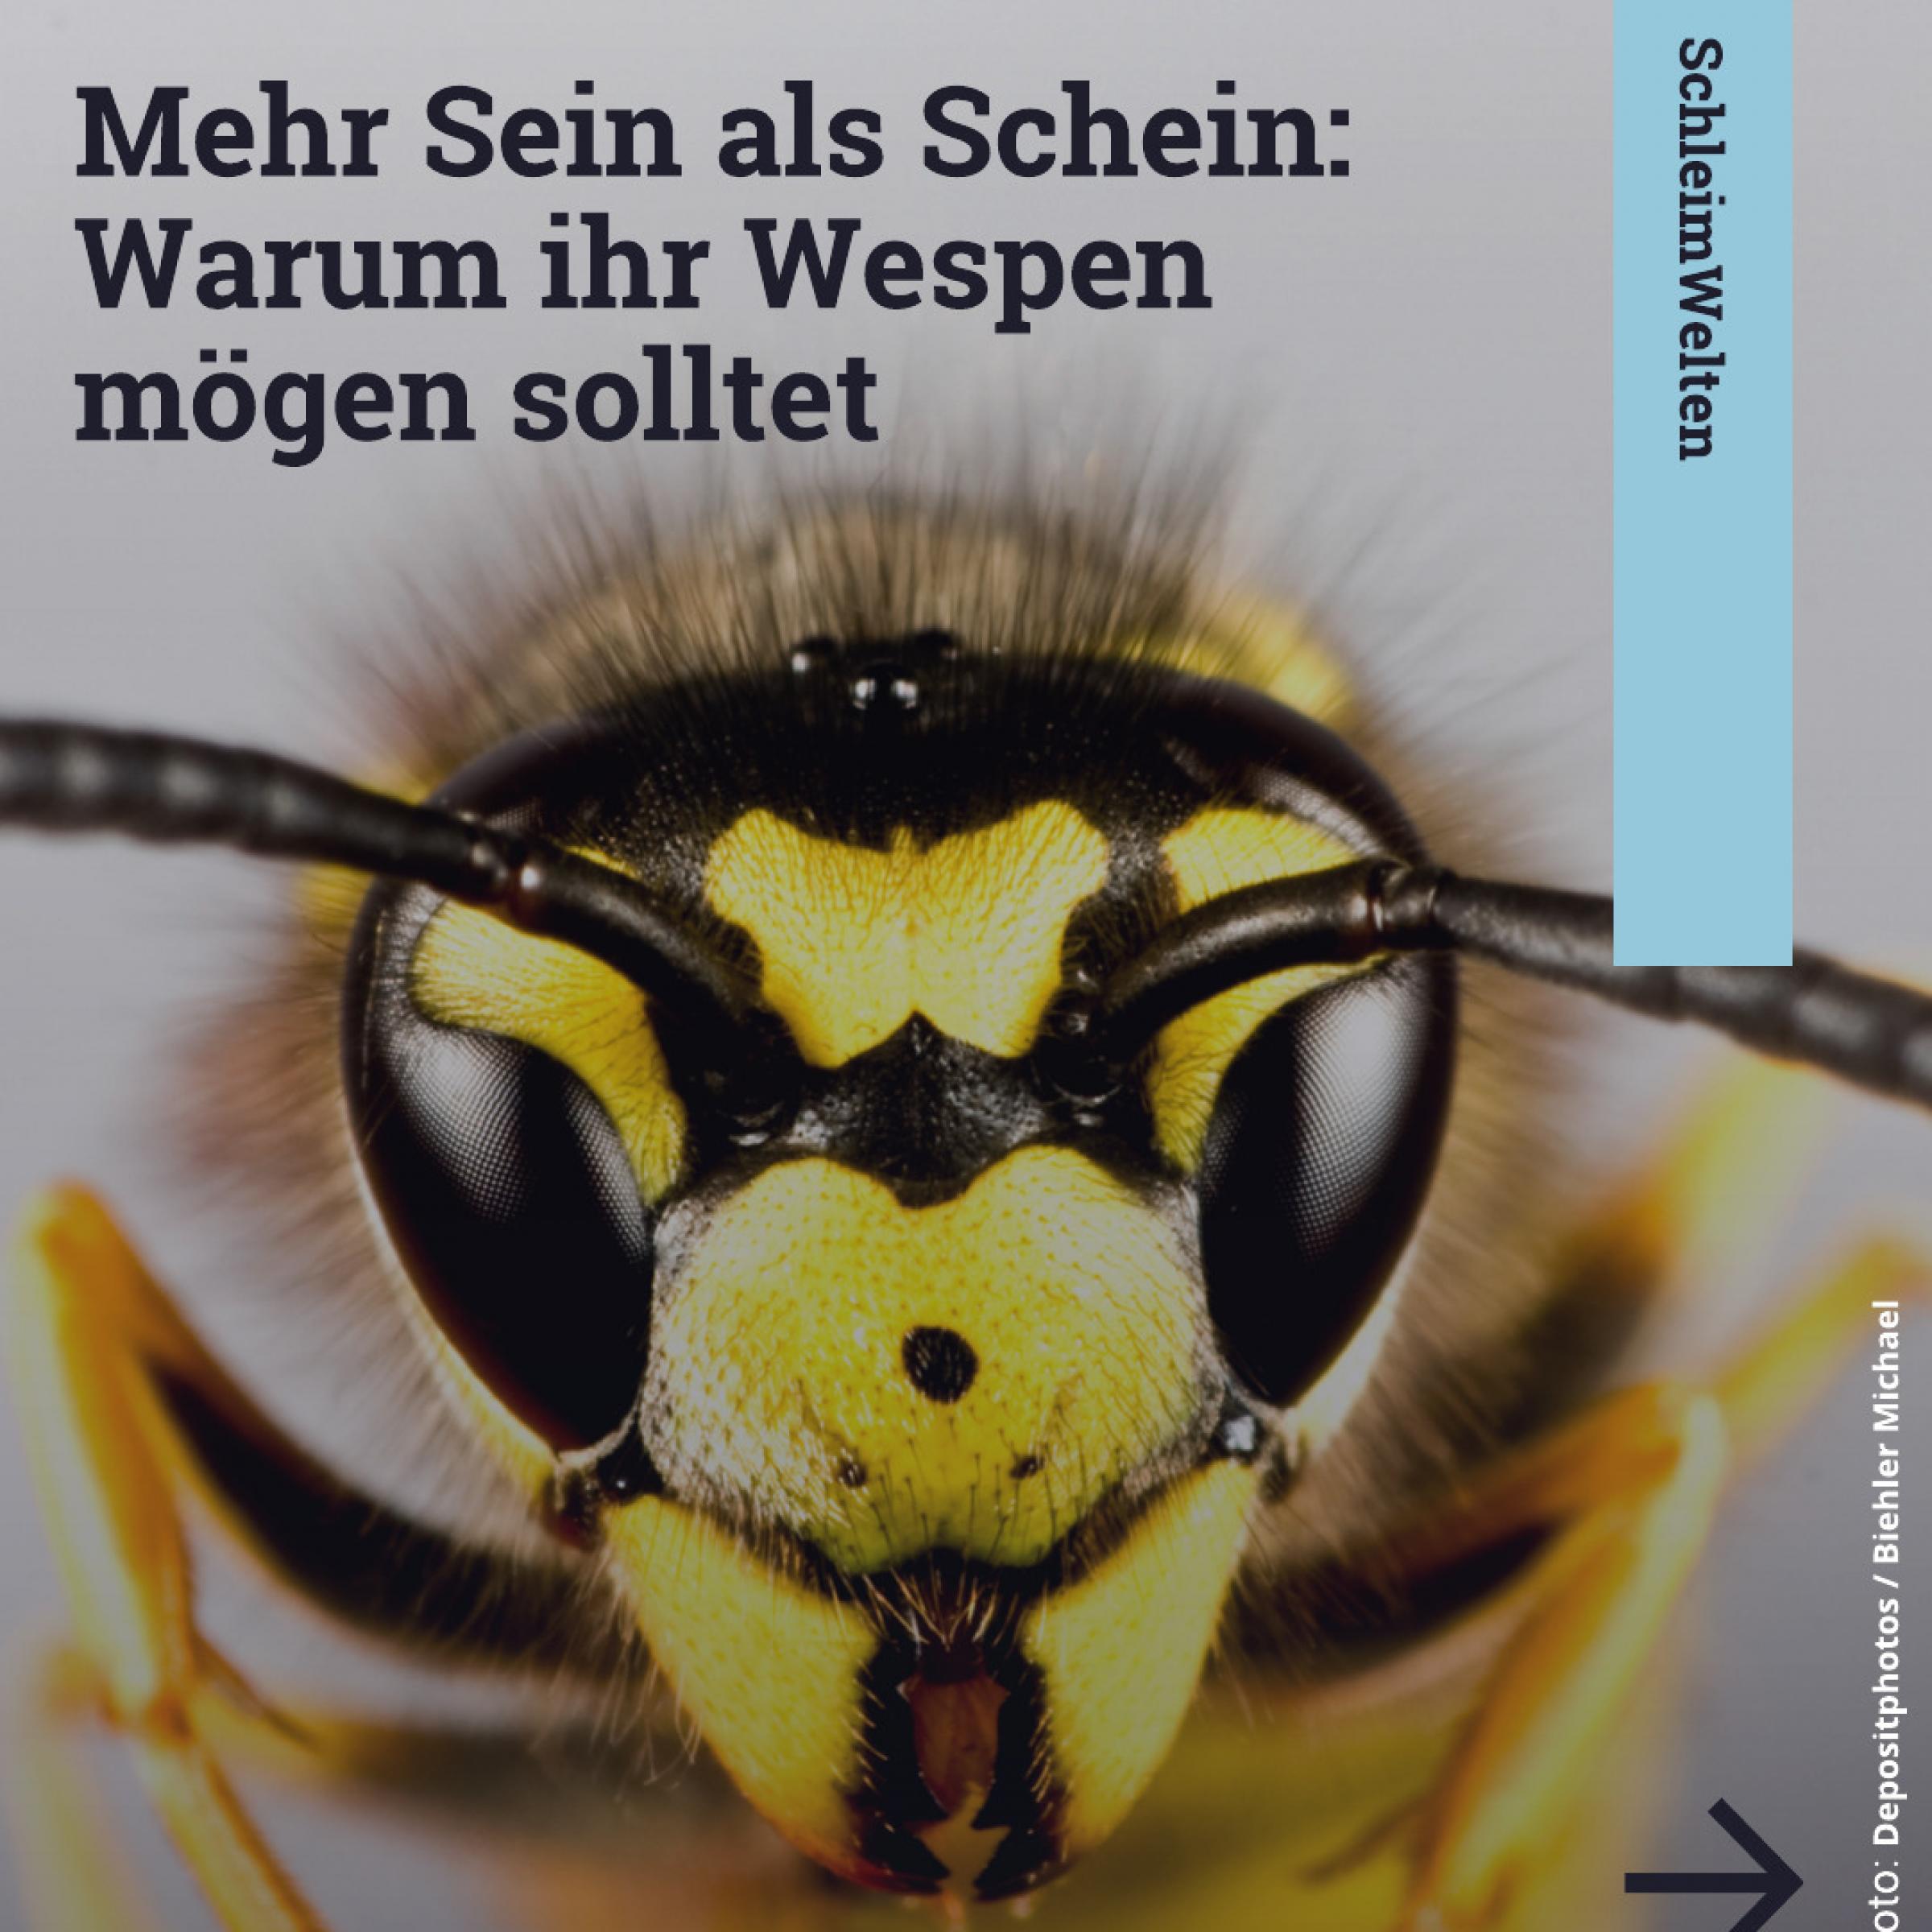 Nahaufnahme eines Wespenkopfes im Hintergrund; Text davor: Mehr Sein als Schein: Warum ihr Wespen mögen solltet.